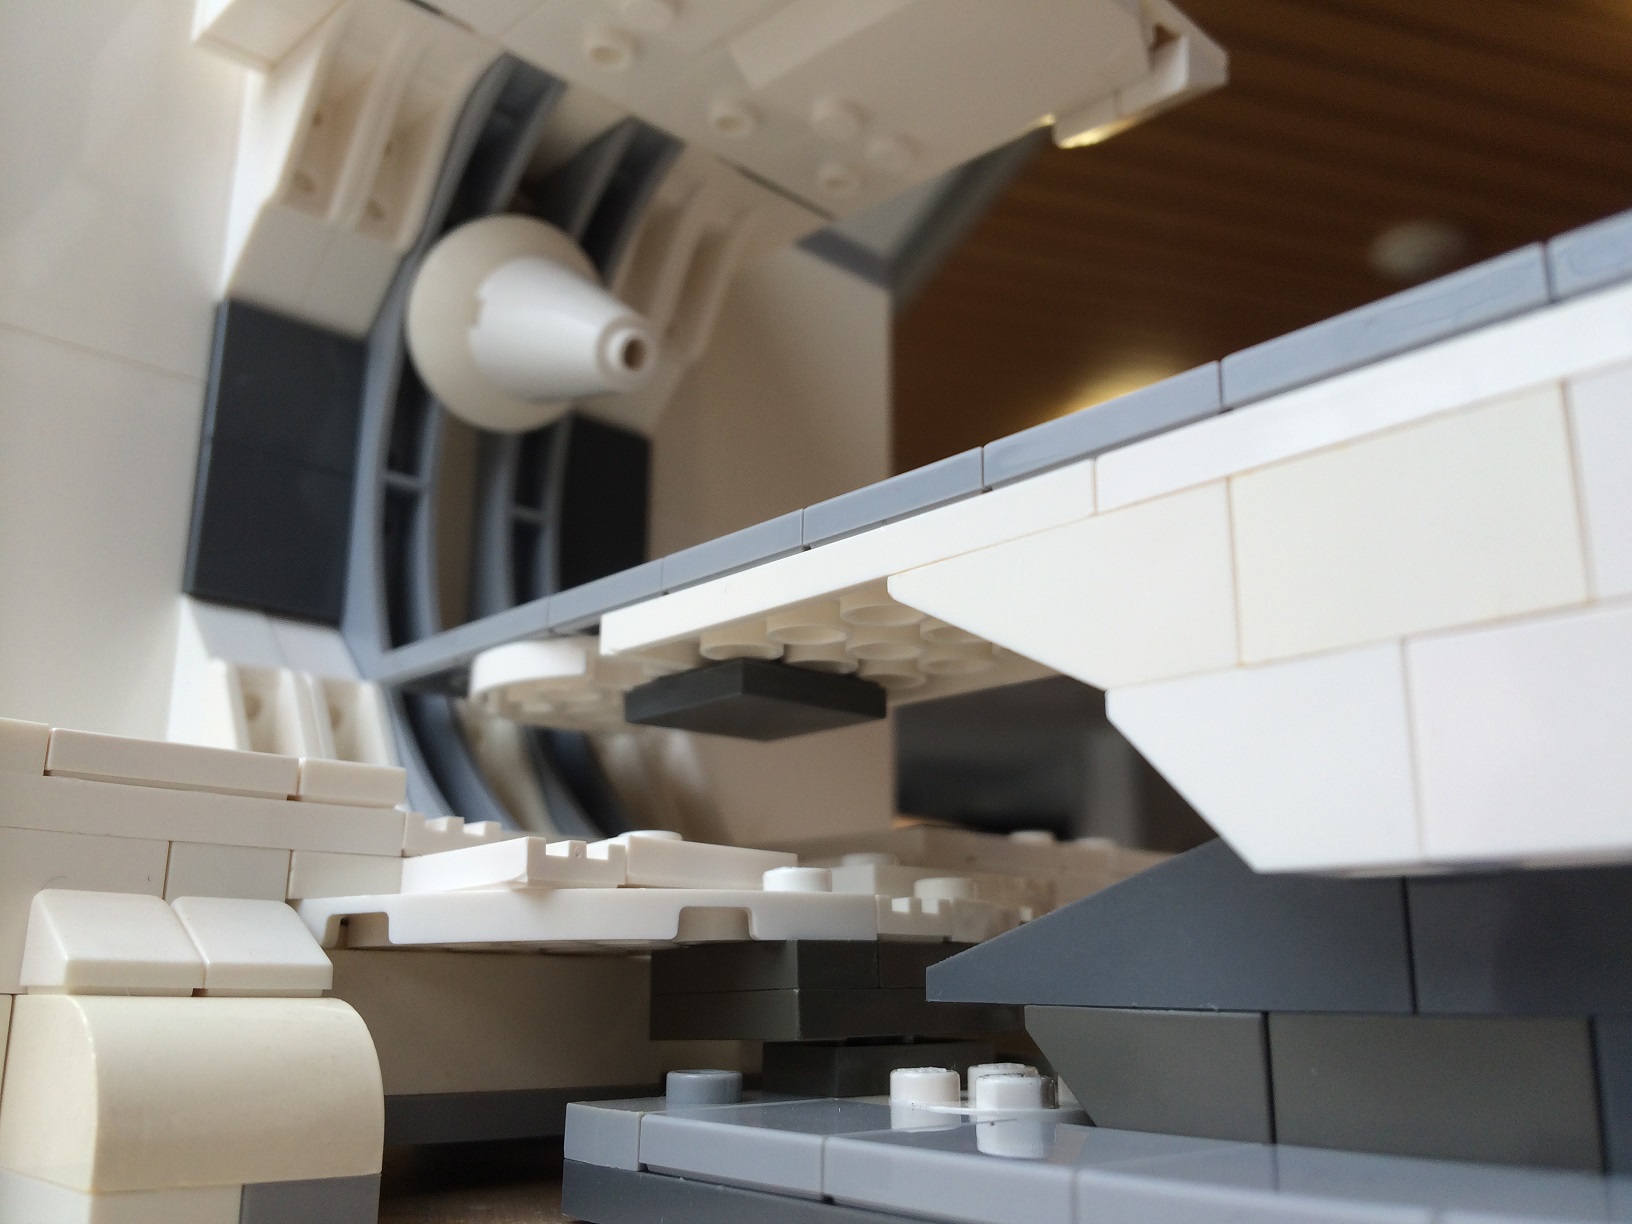 Lego Medical Models